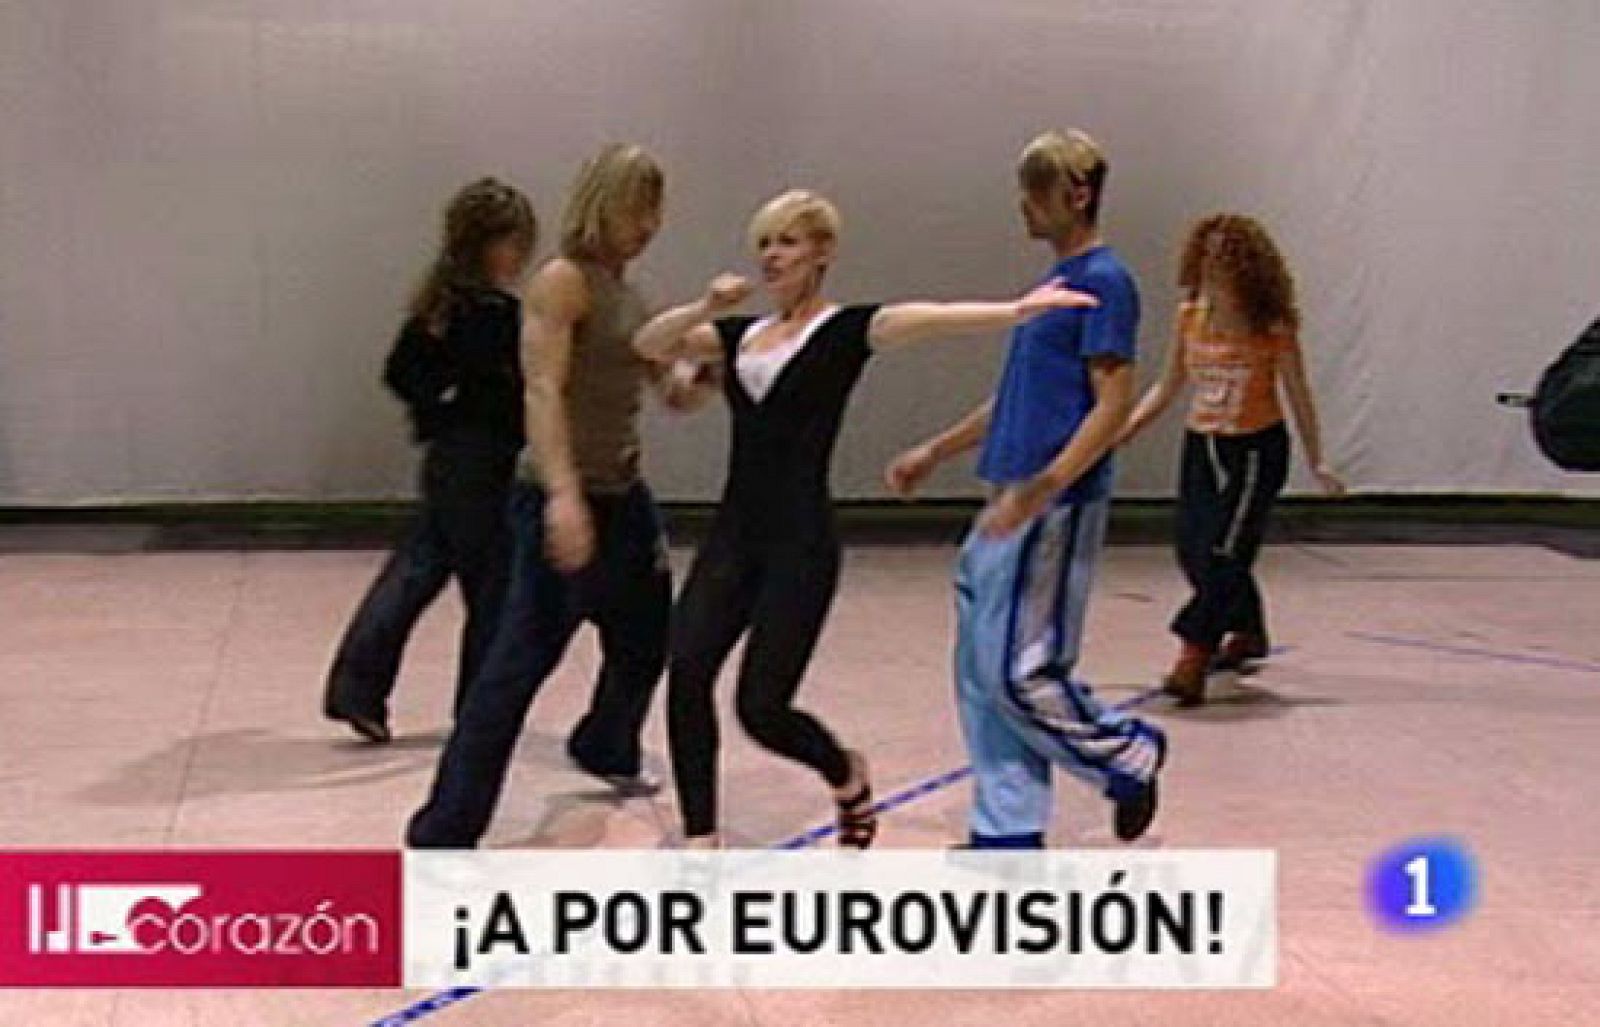 Corazón - Eurovisión 2009, ensayos de Soraya